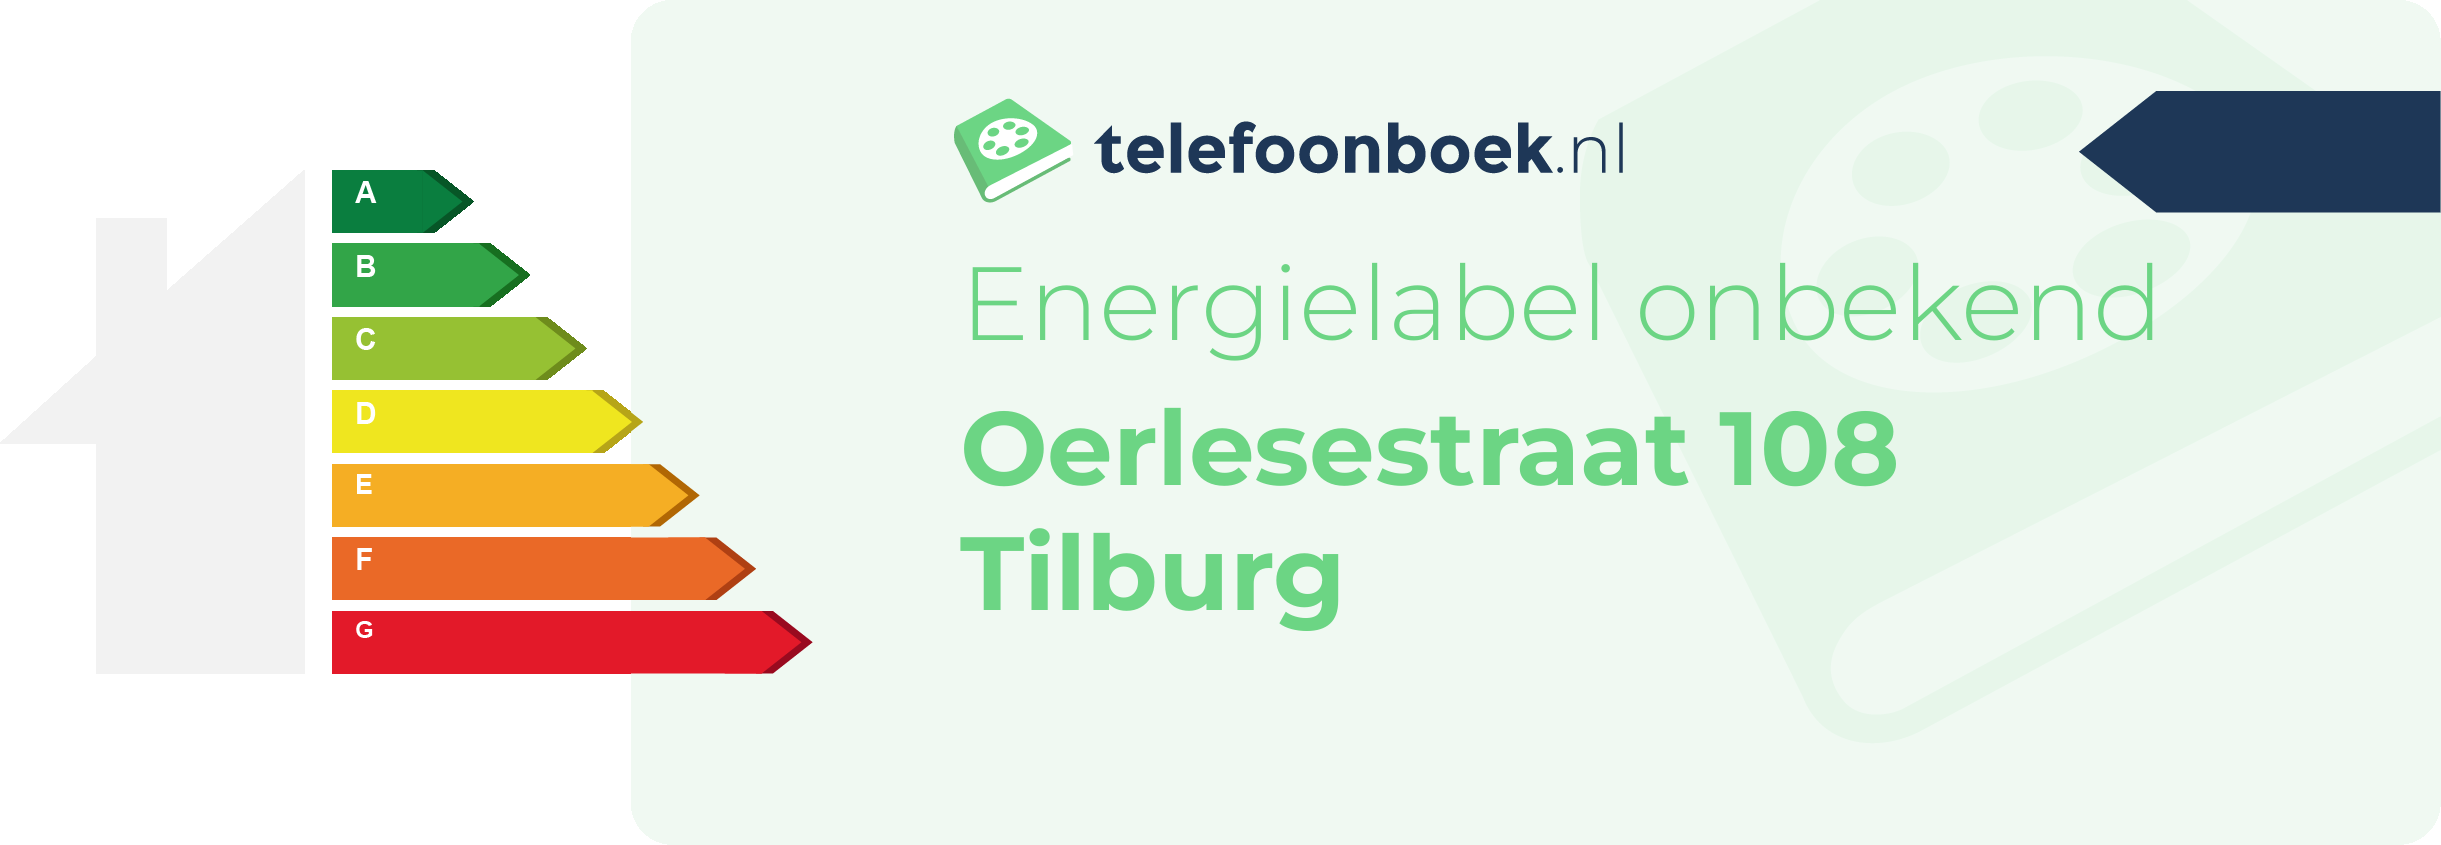 Energielabel Oerlesestraat 108 Tilburg